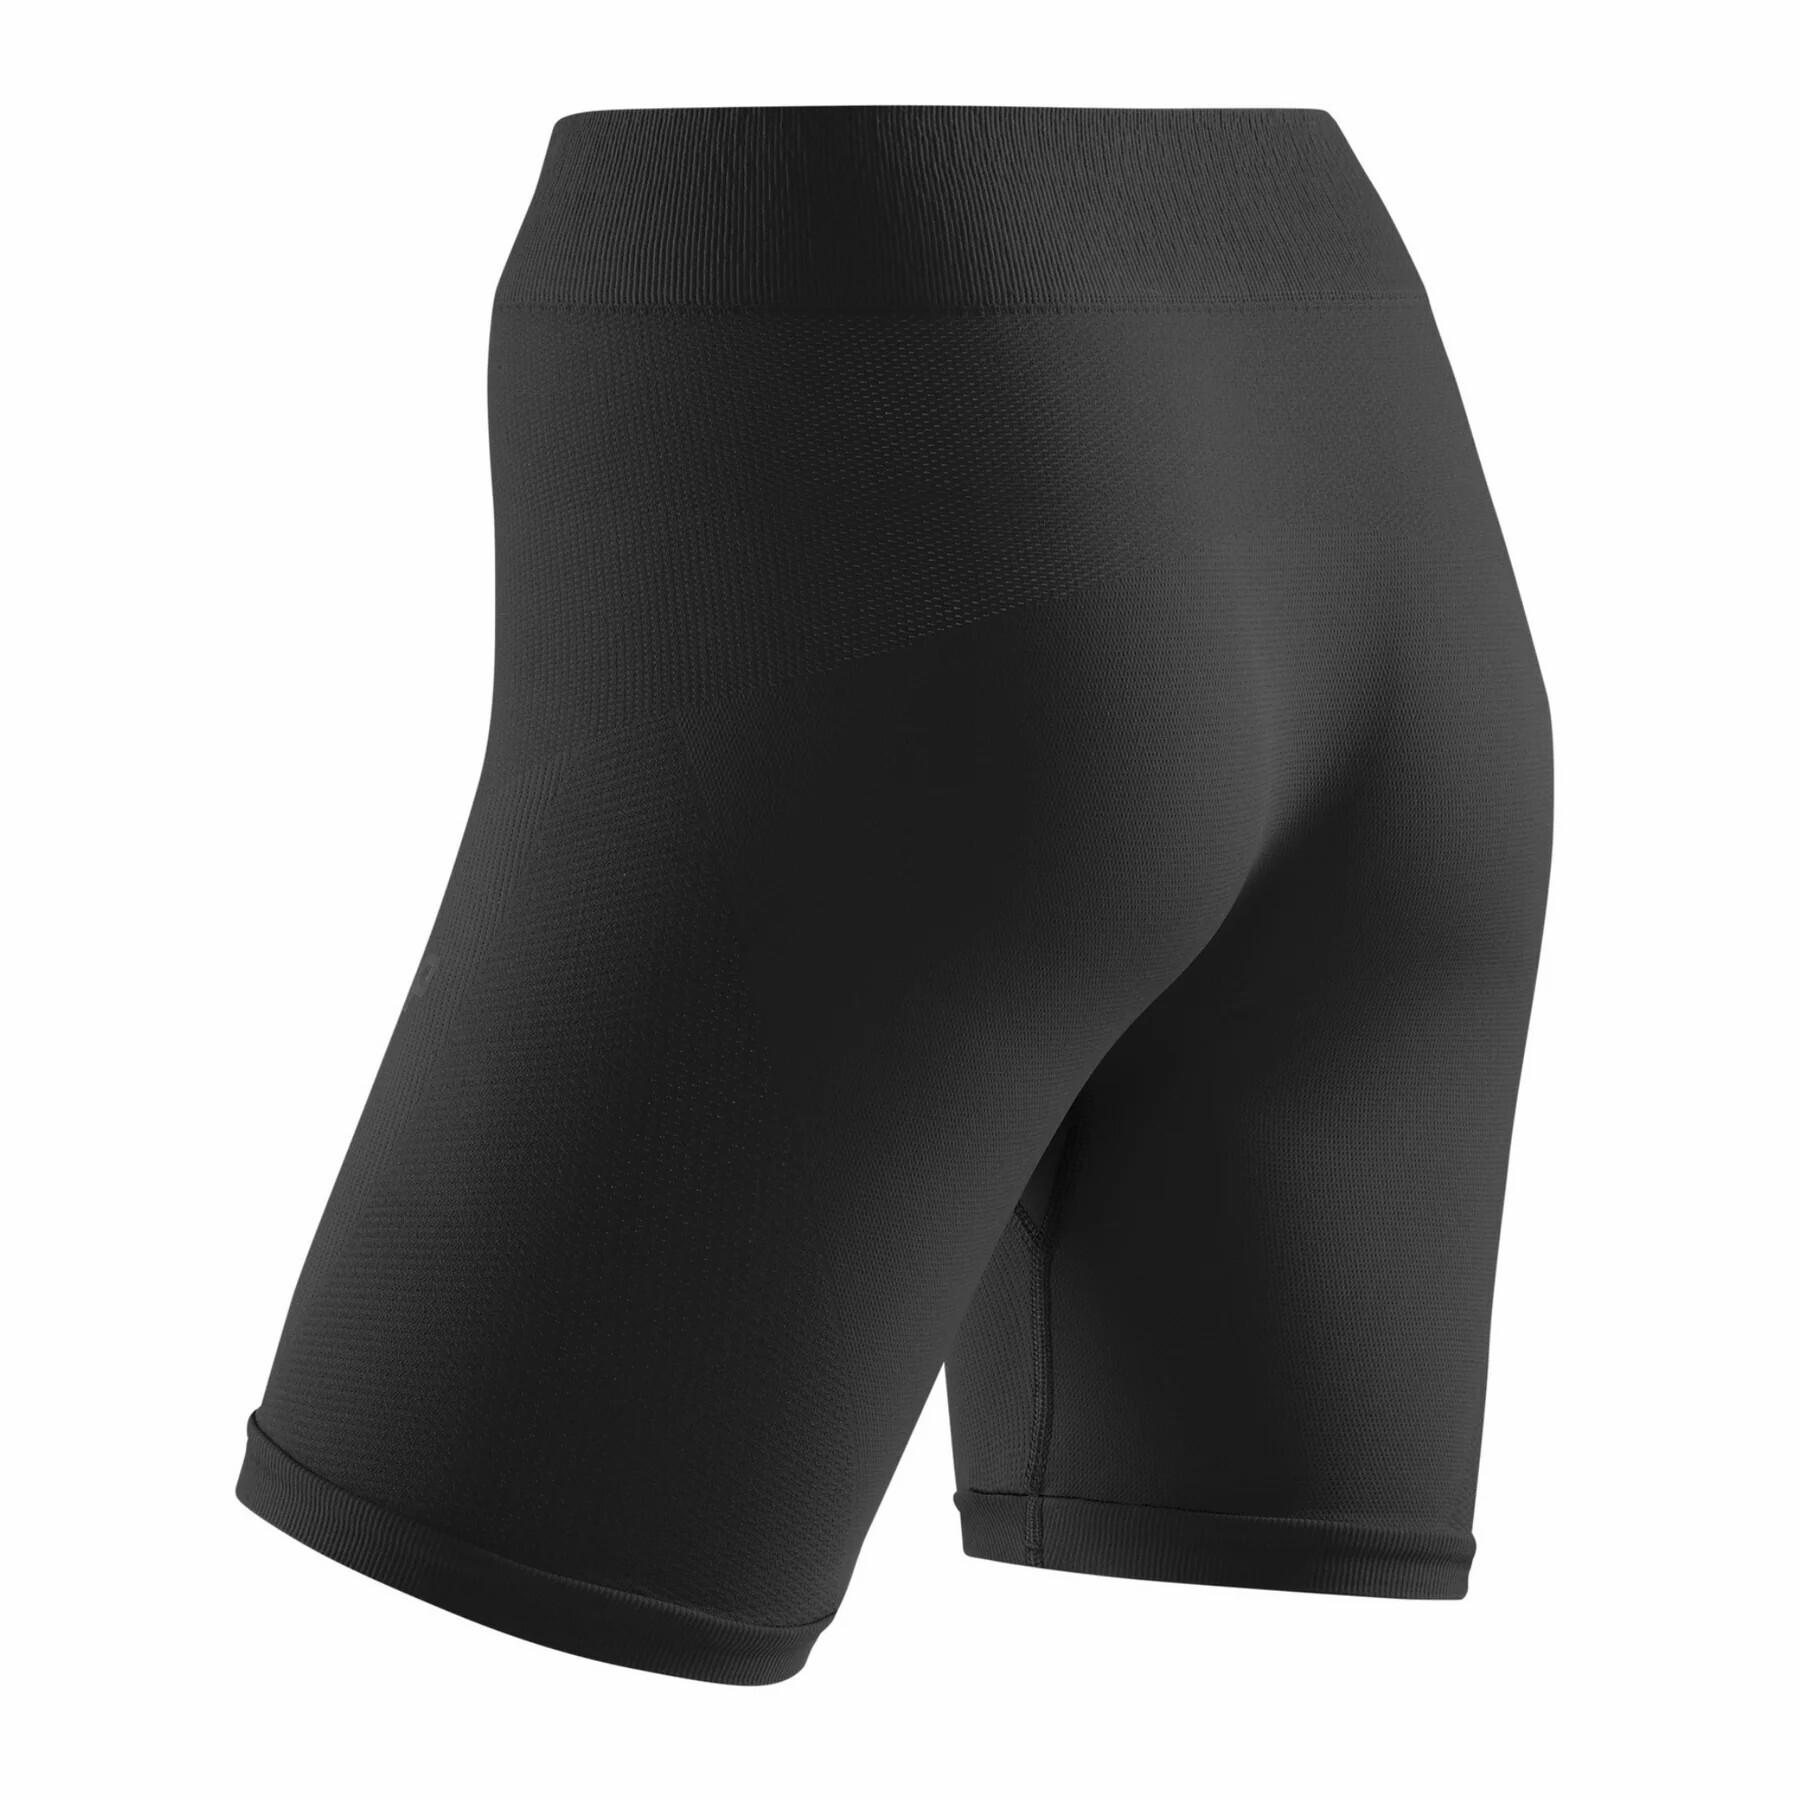 Pantalones cortos de mujer para el frío CEP Compression